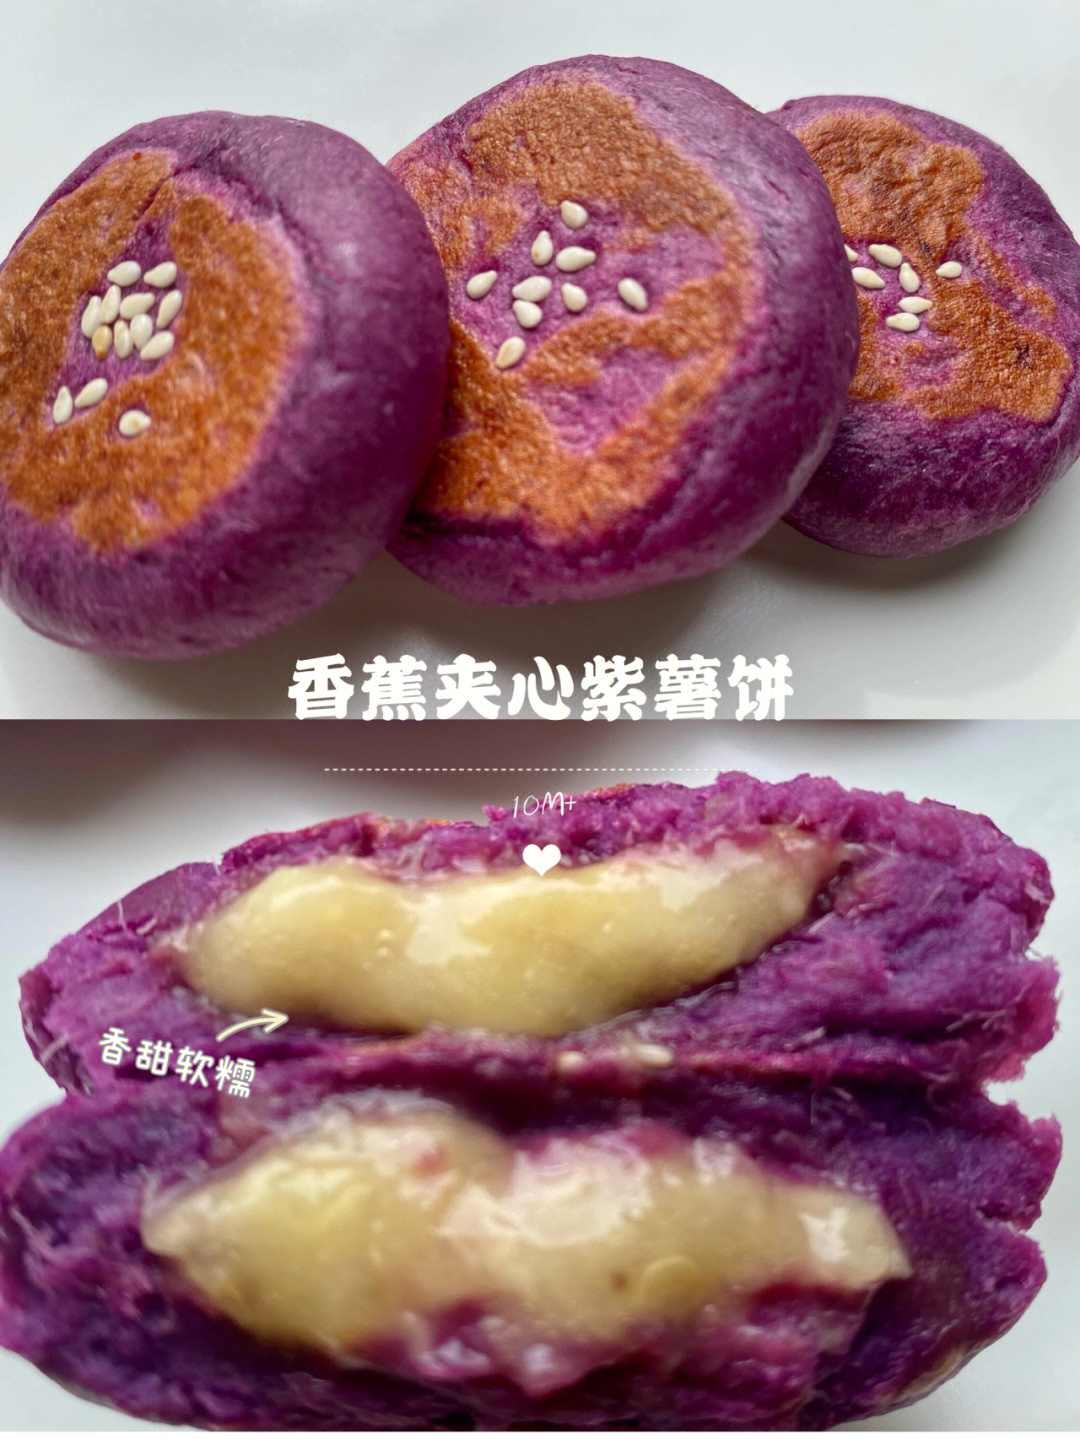 紫薯泥和面粉搅拌均匀,分成5等份圆饼3